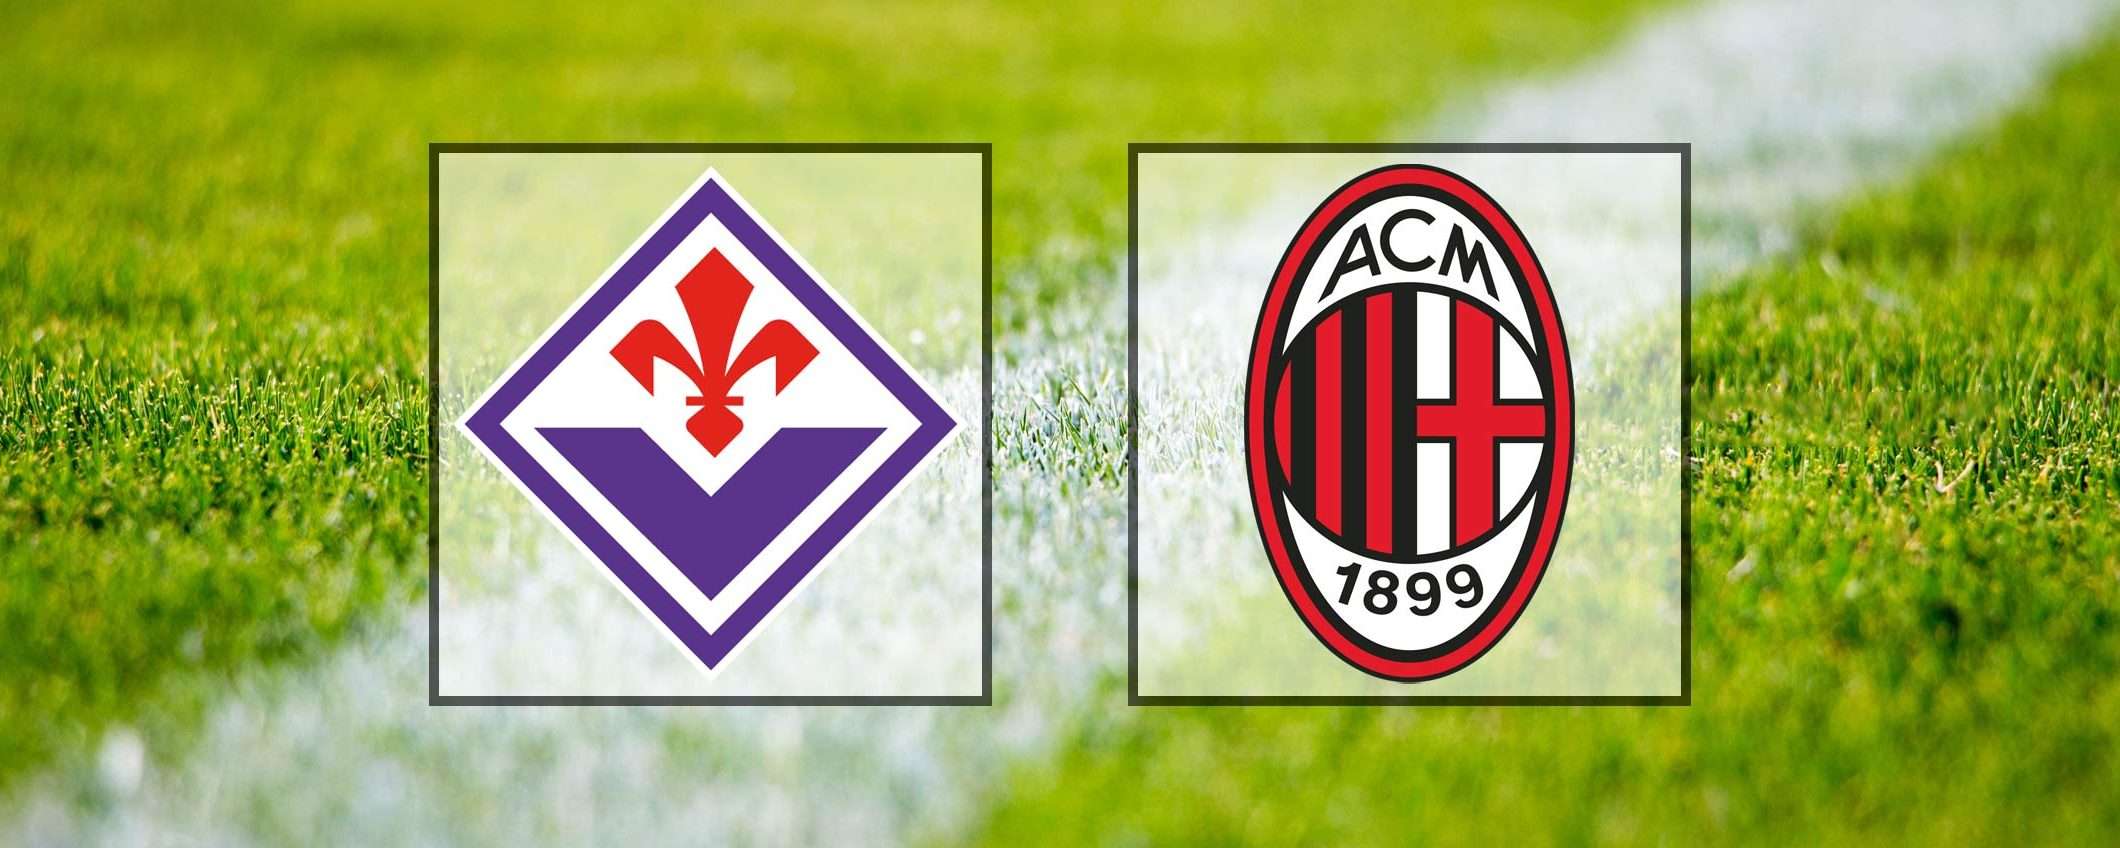 Come vedere Fiorentina-Milan in streaming